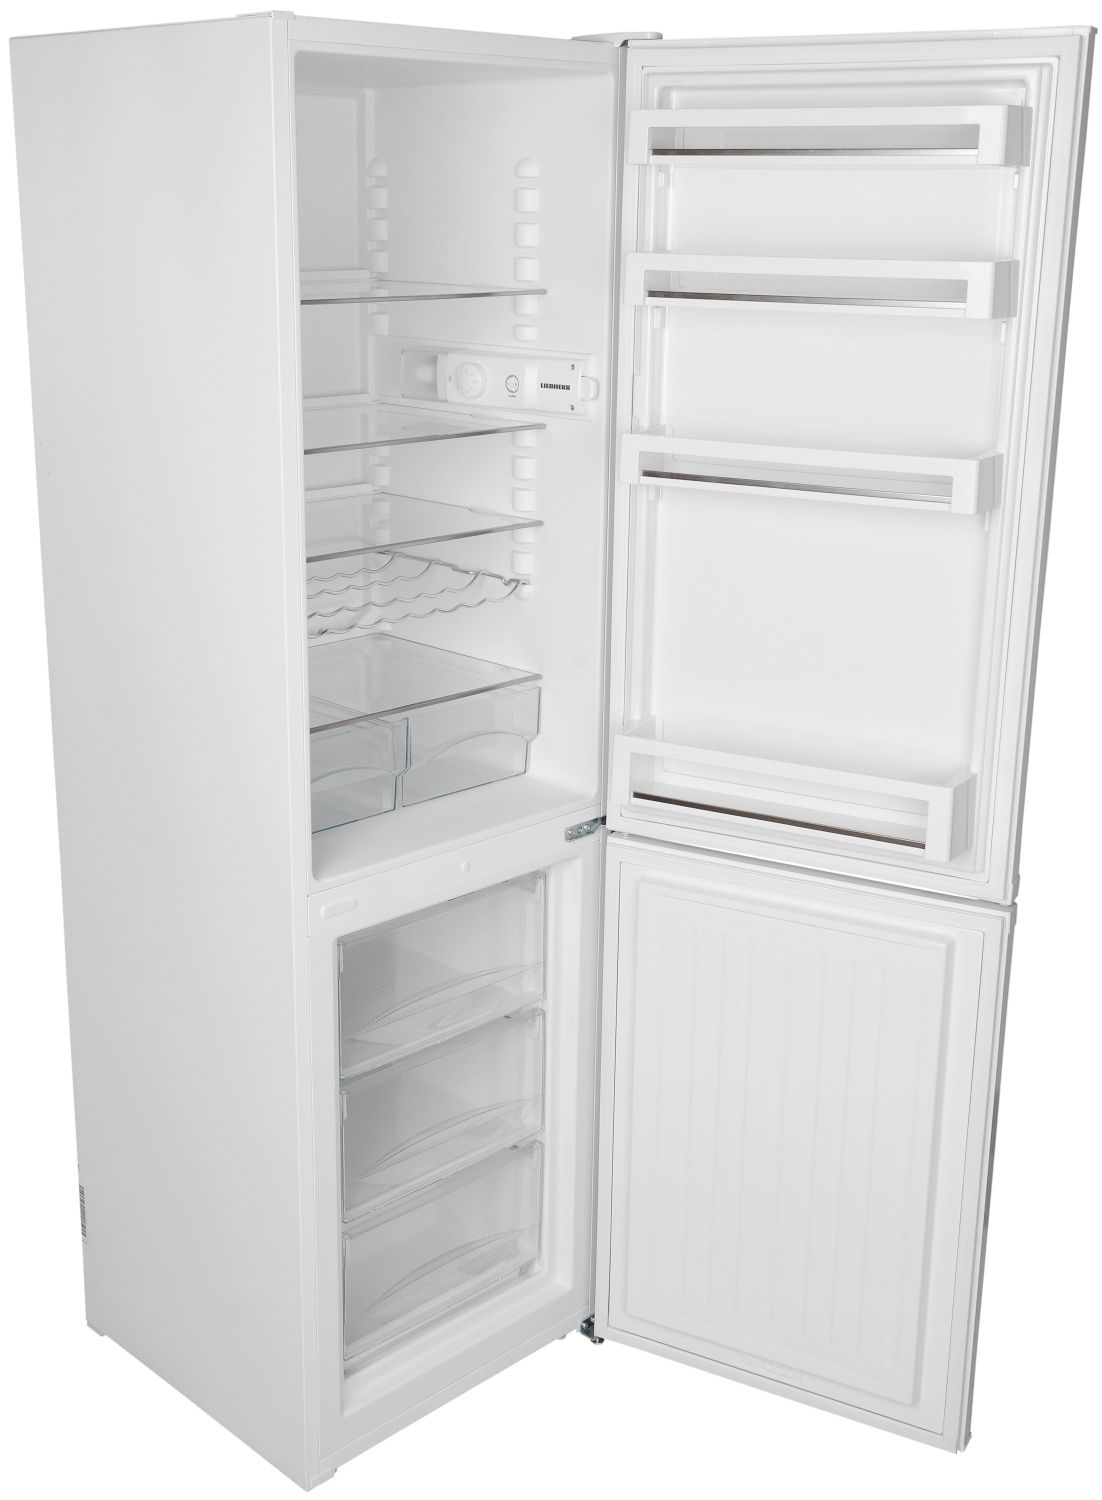 Ремонт холодильников и кондиционеров всех видов любой сложности